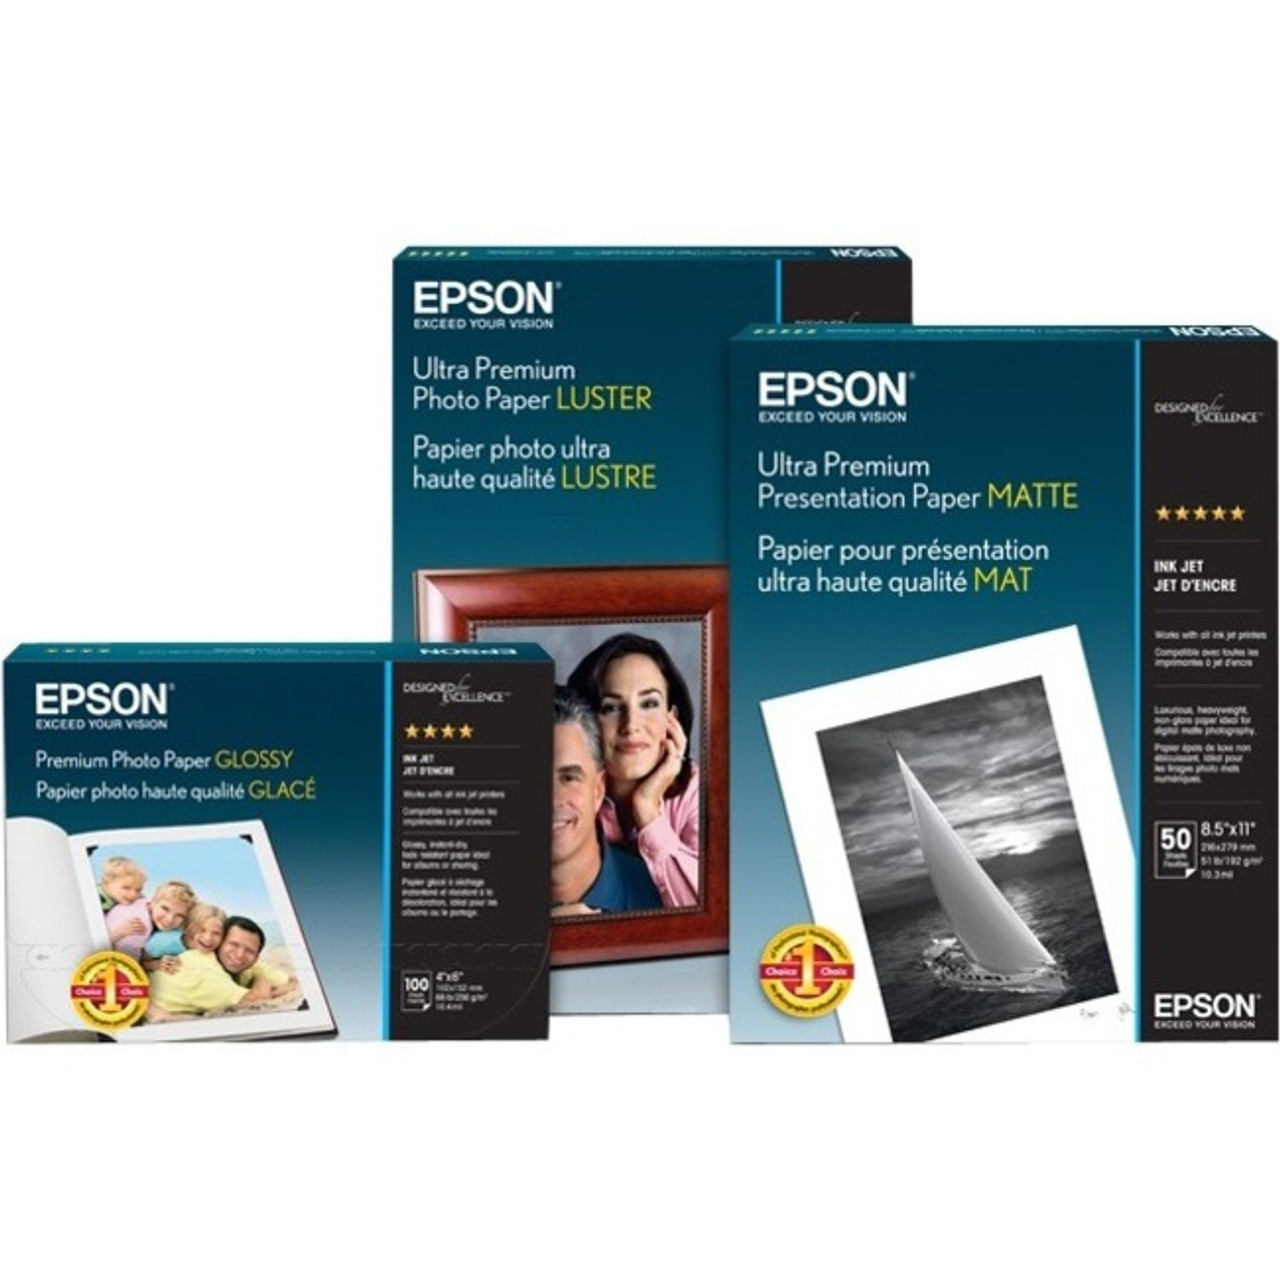 Epson S450136